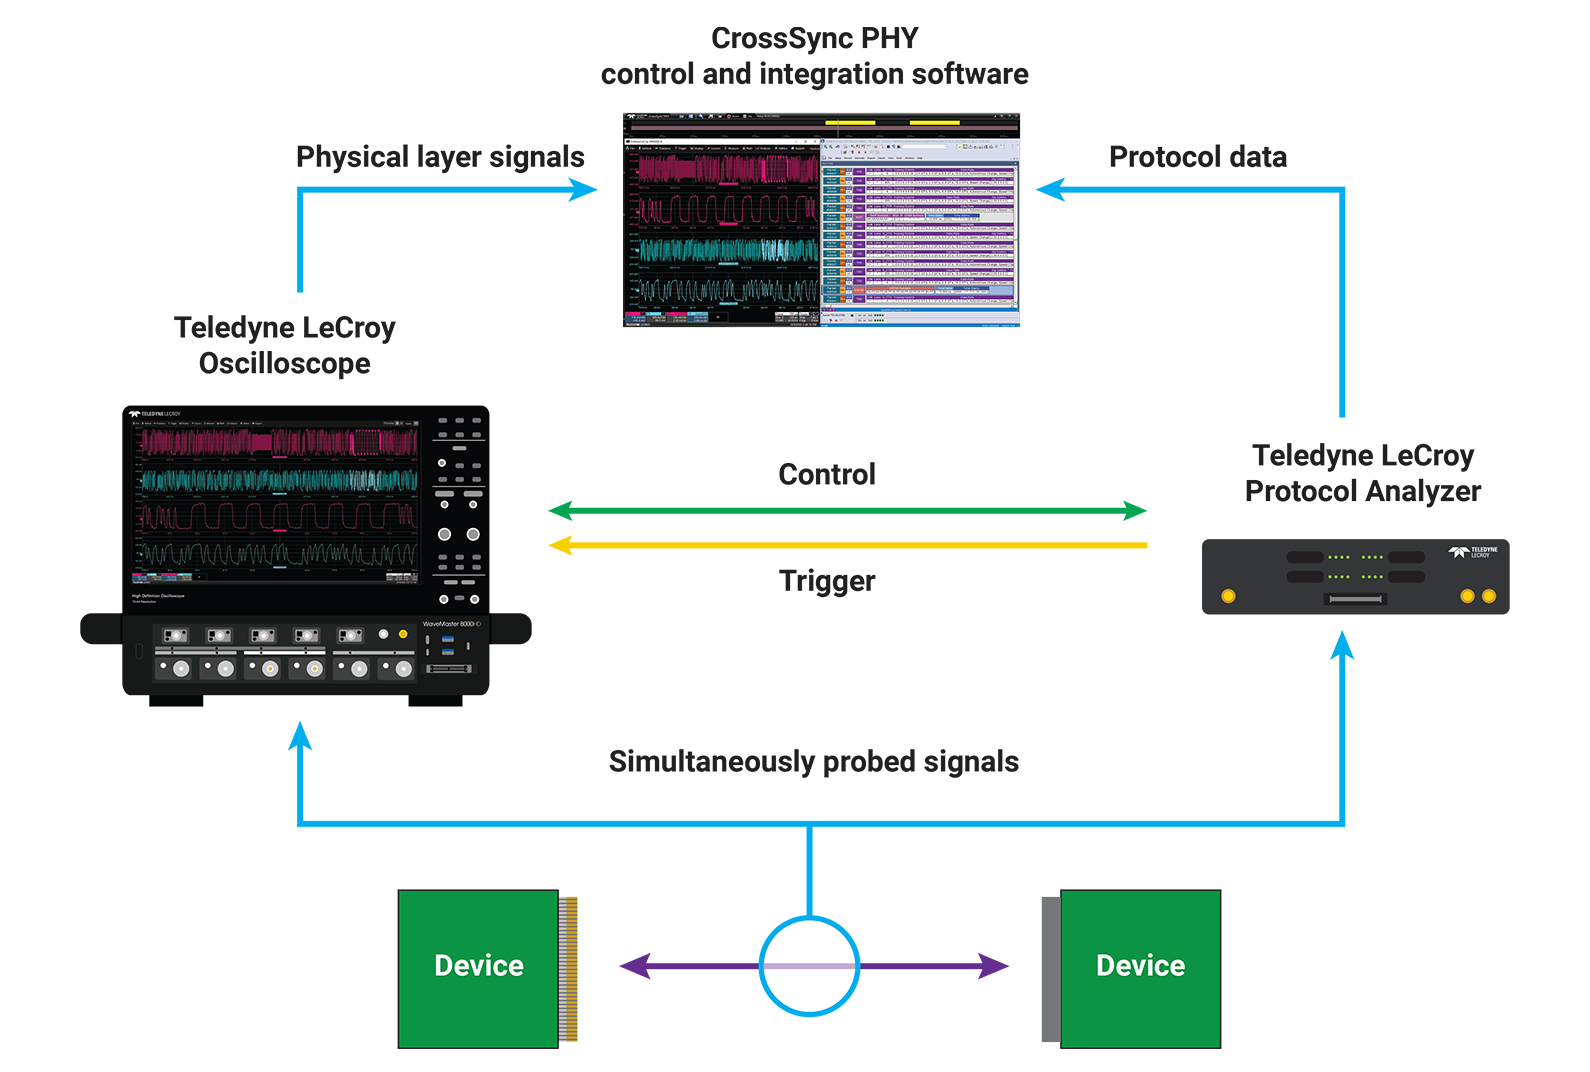 显示使用 CrossSync PHY 软件和探测夹具的示波器和协议分析仪之间的连接机制的框图